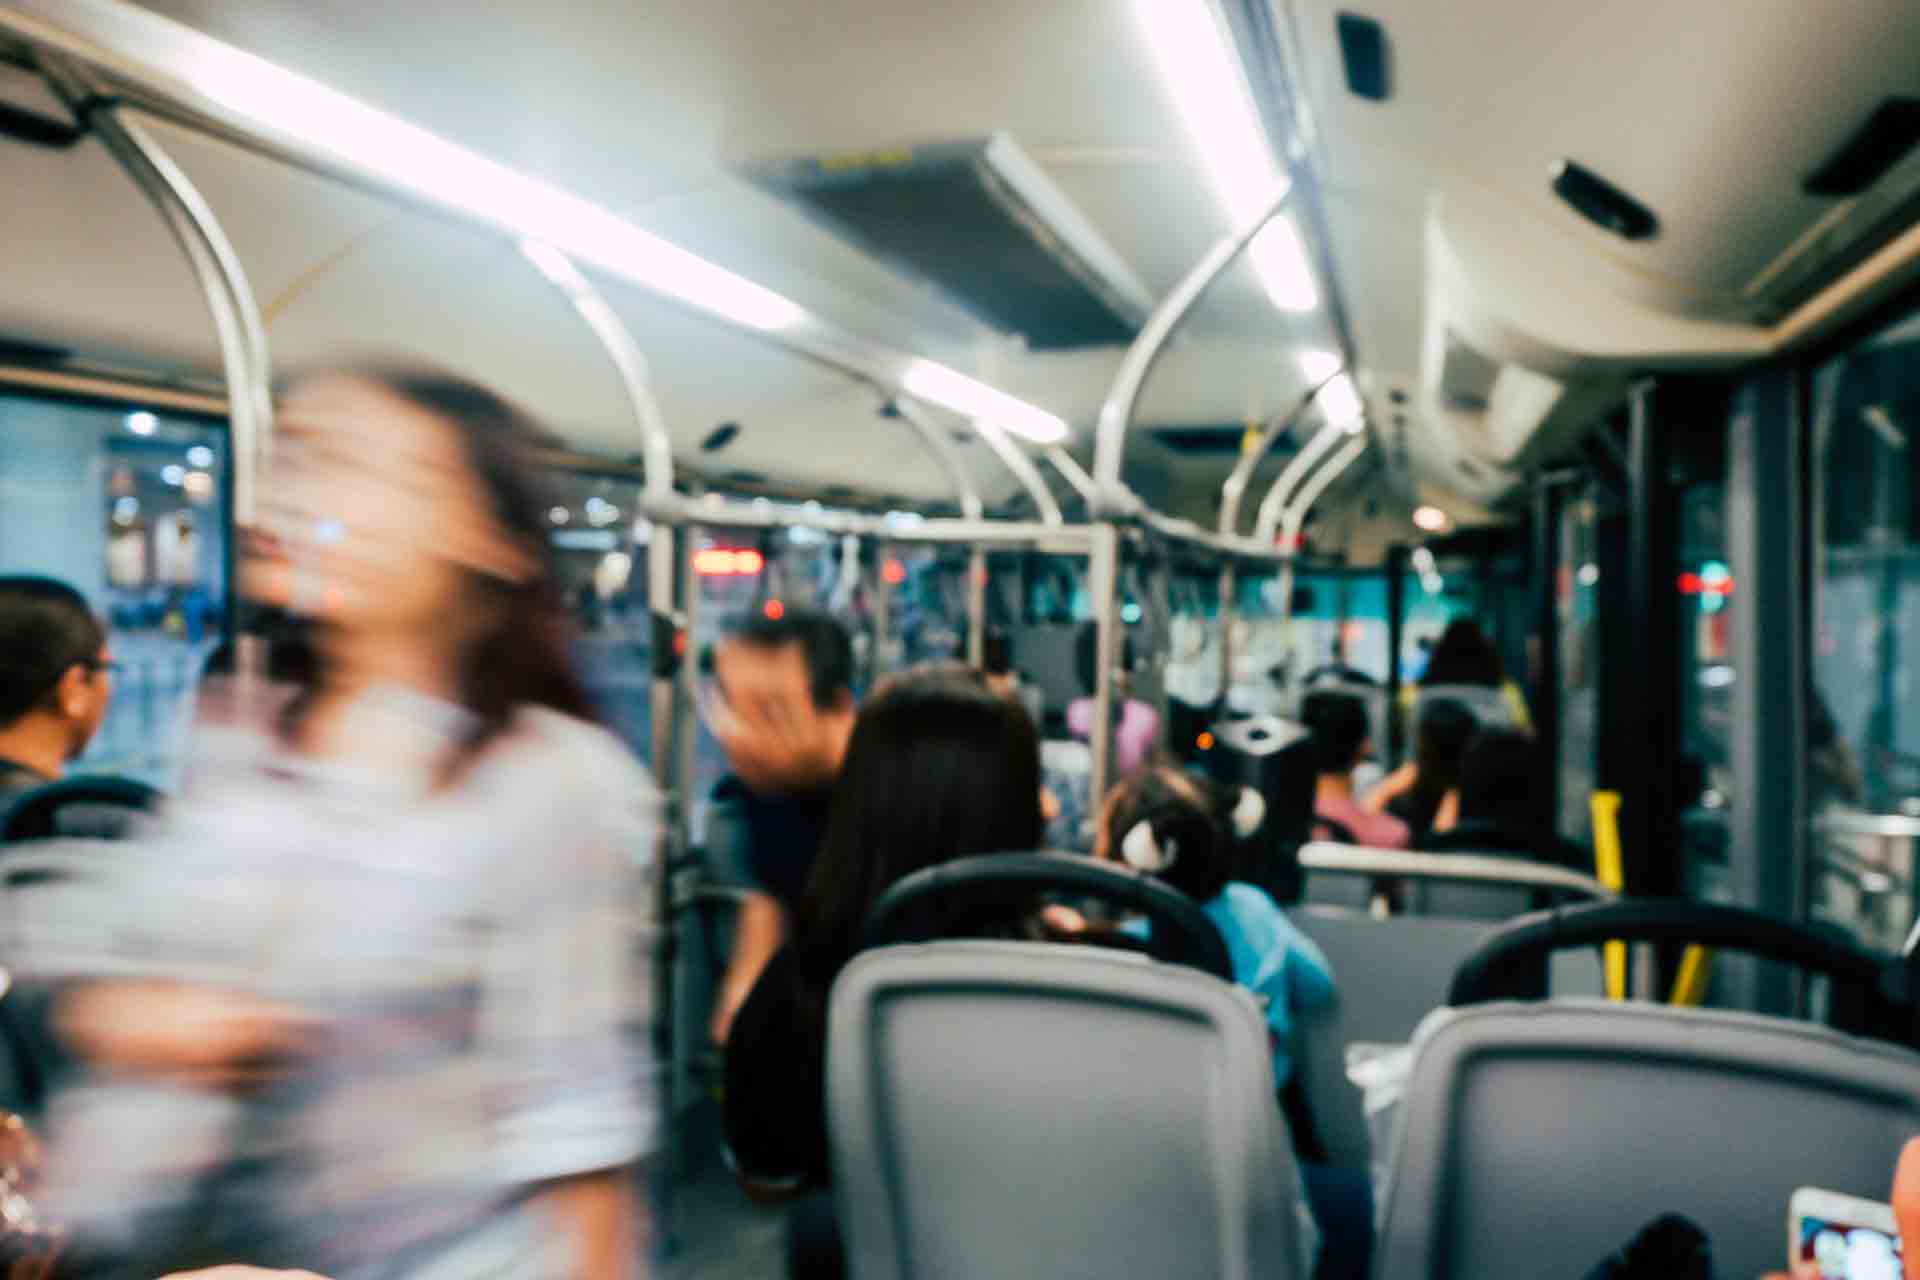 Trasporto pubblico: nuove regole per una maggiore qualità dei servizi